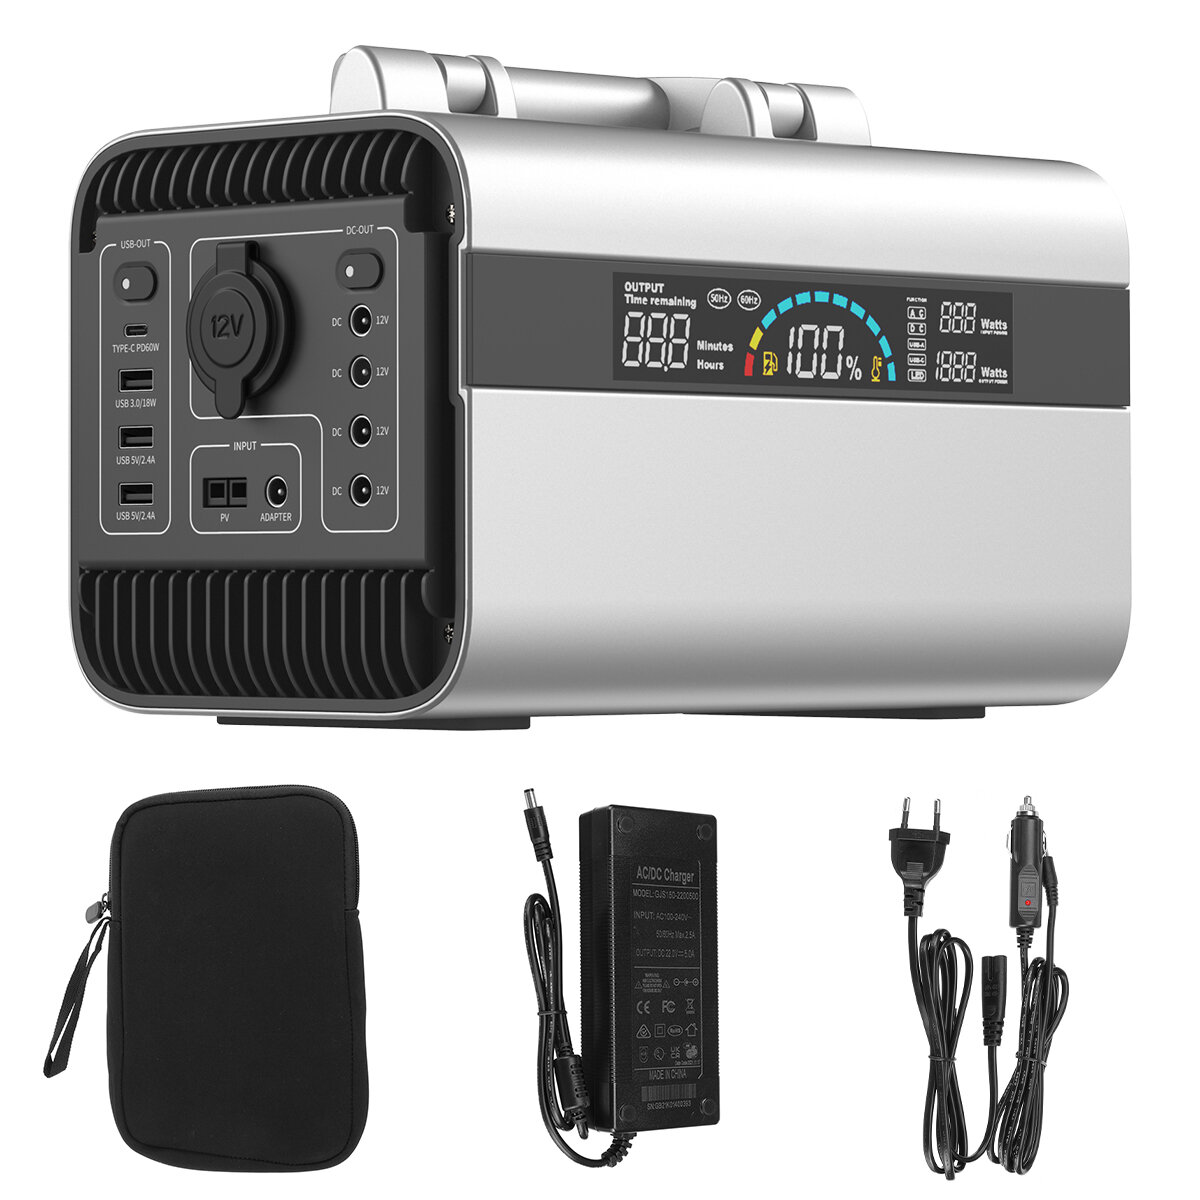 600 W 156000 mAh (577 Wh) Centrale elettrica portatile 220 V 50 Hz Alimentazione di emergenza Alimentazione per campeggio Viaggi